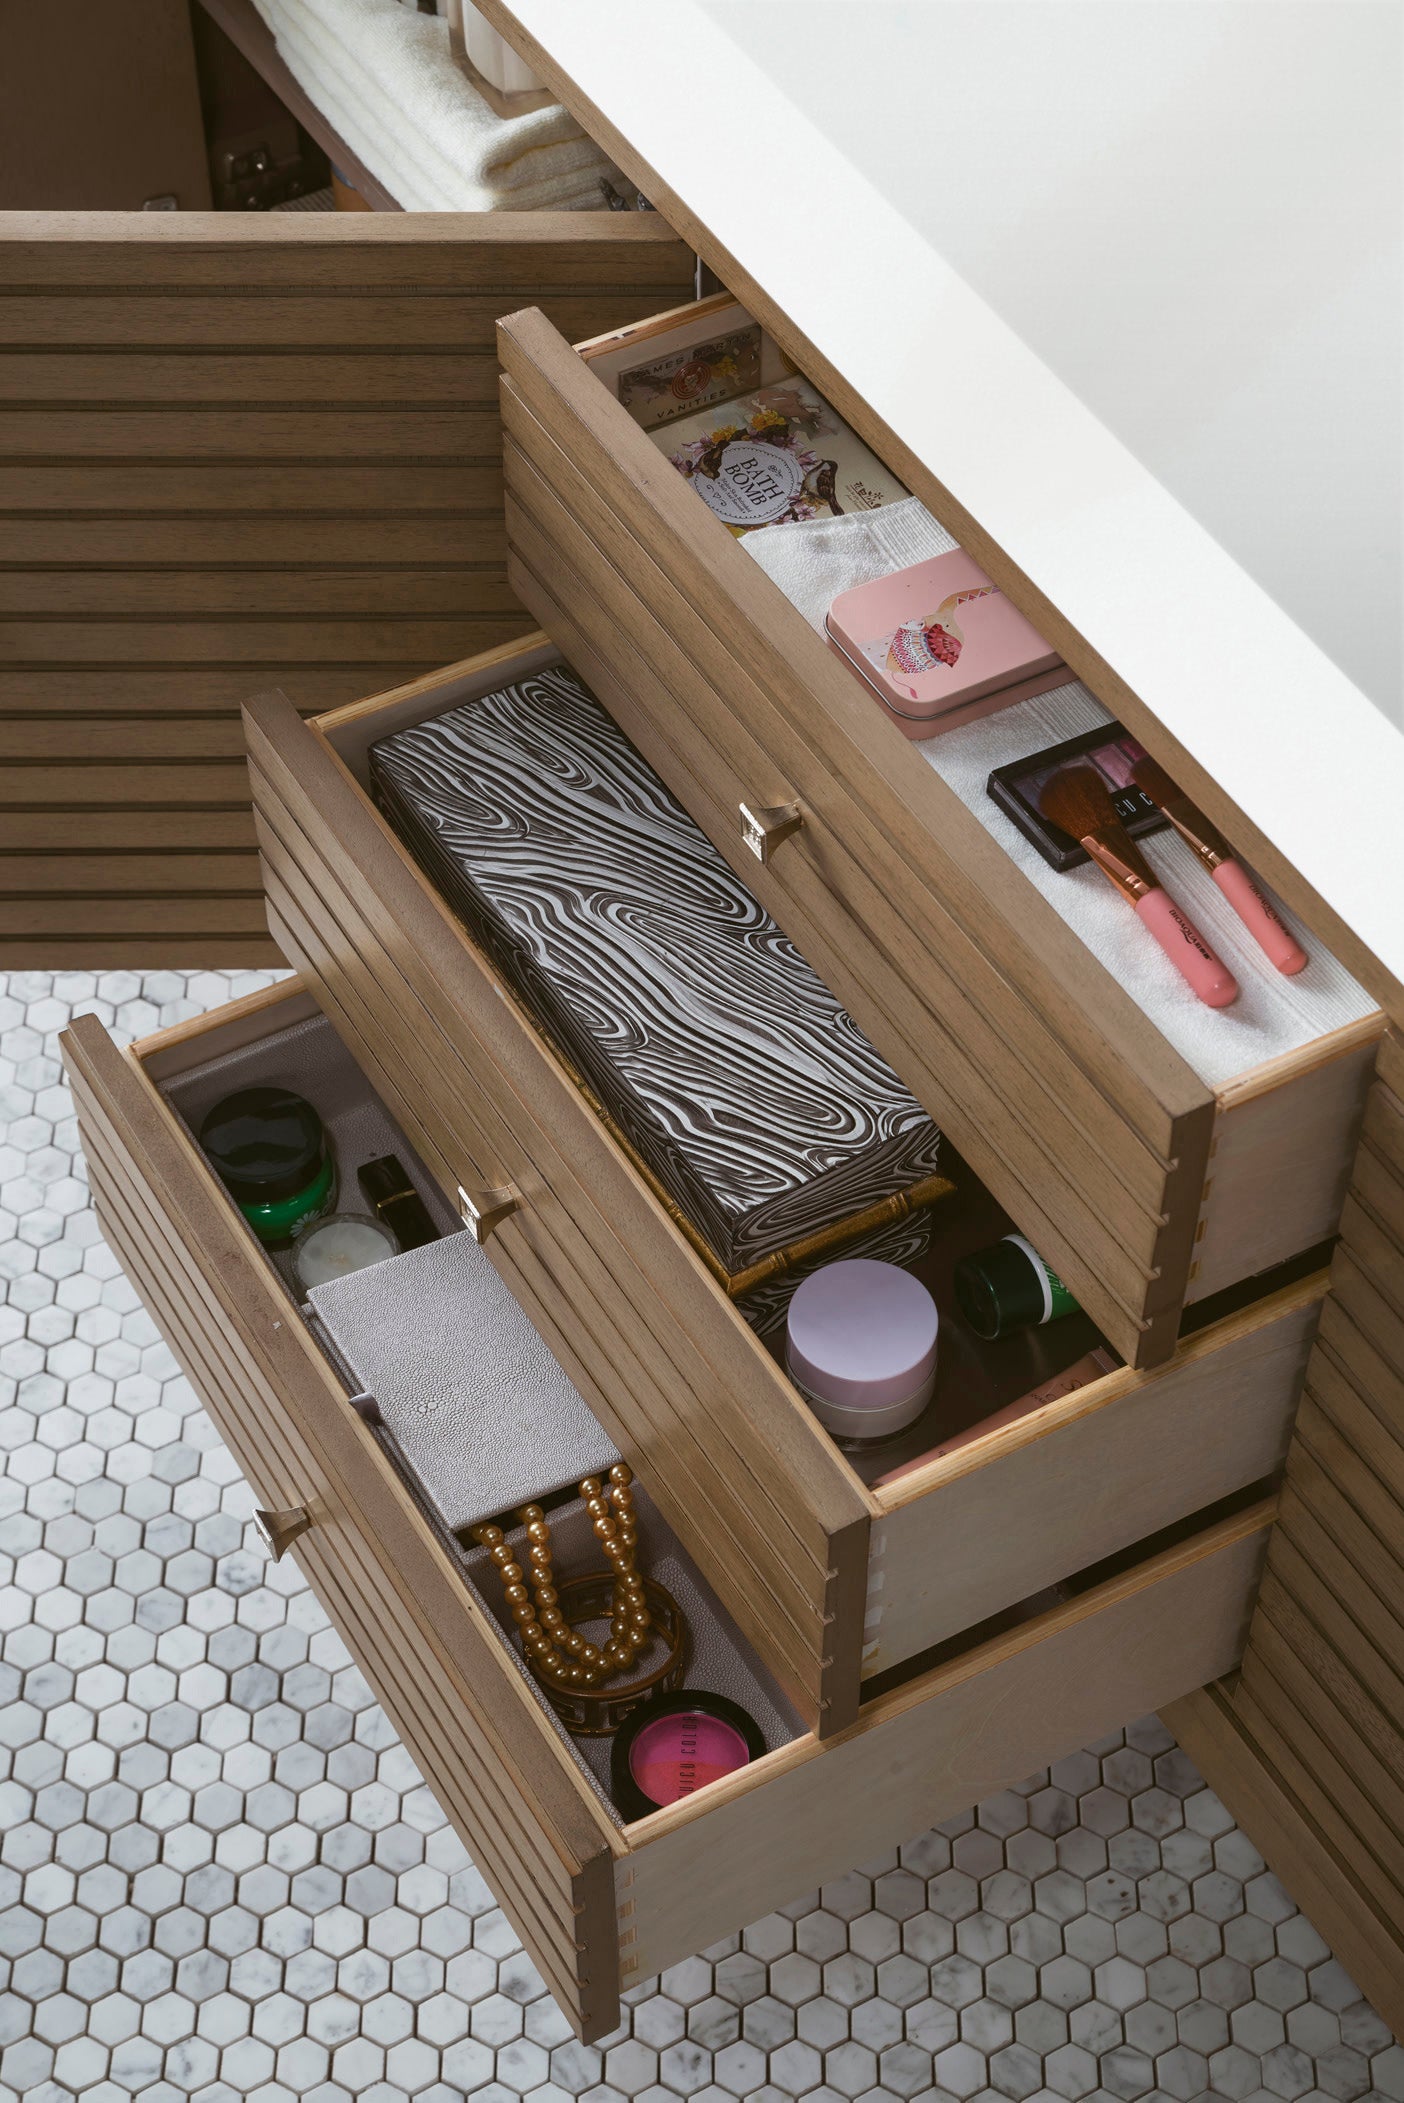 James Martin Linear 72" Single Vanity with Composite Top - Luxe Bathroom Vanities